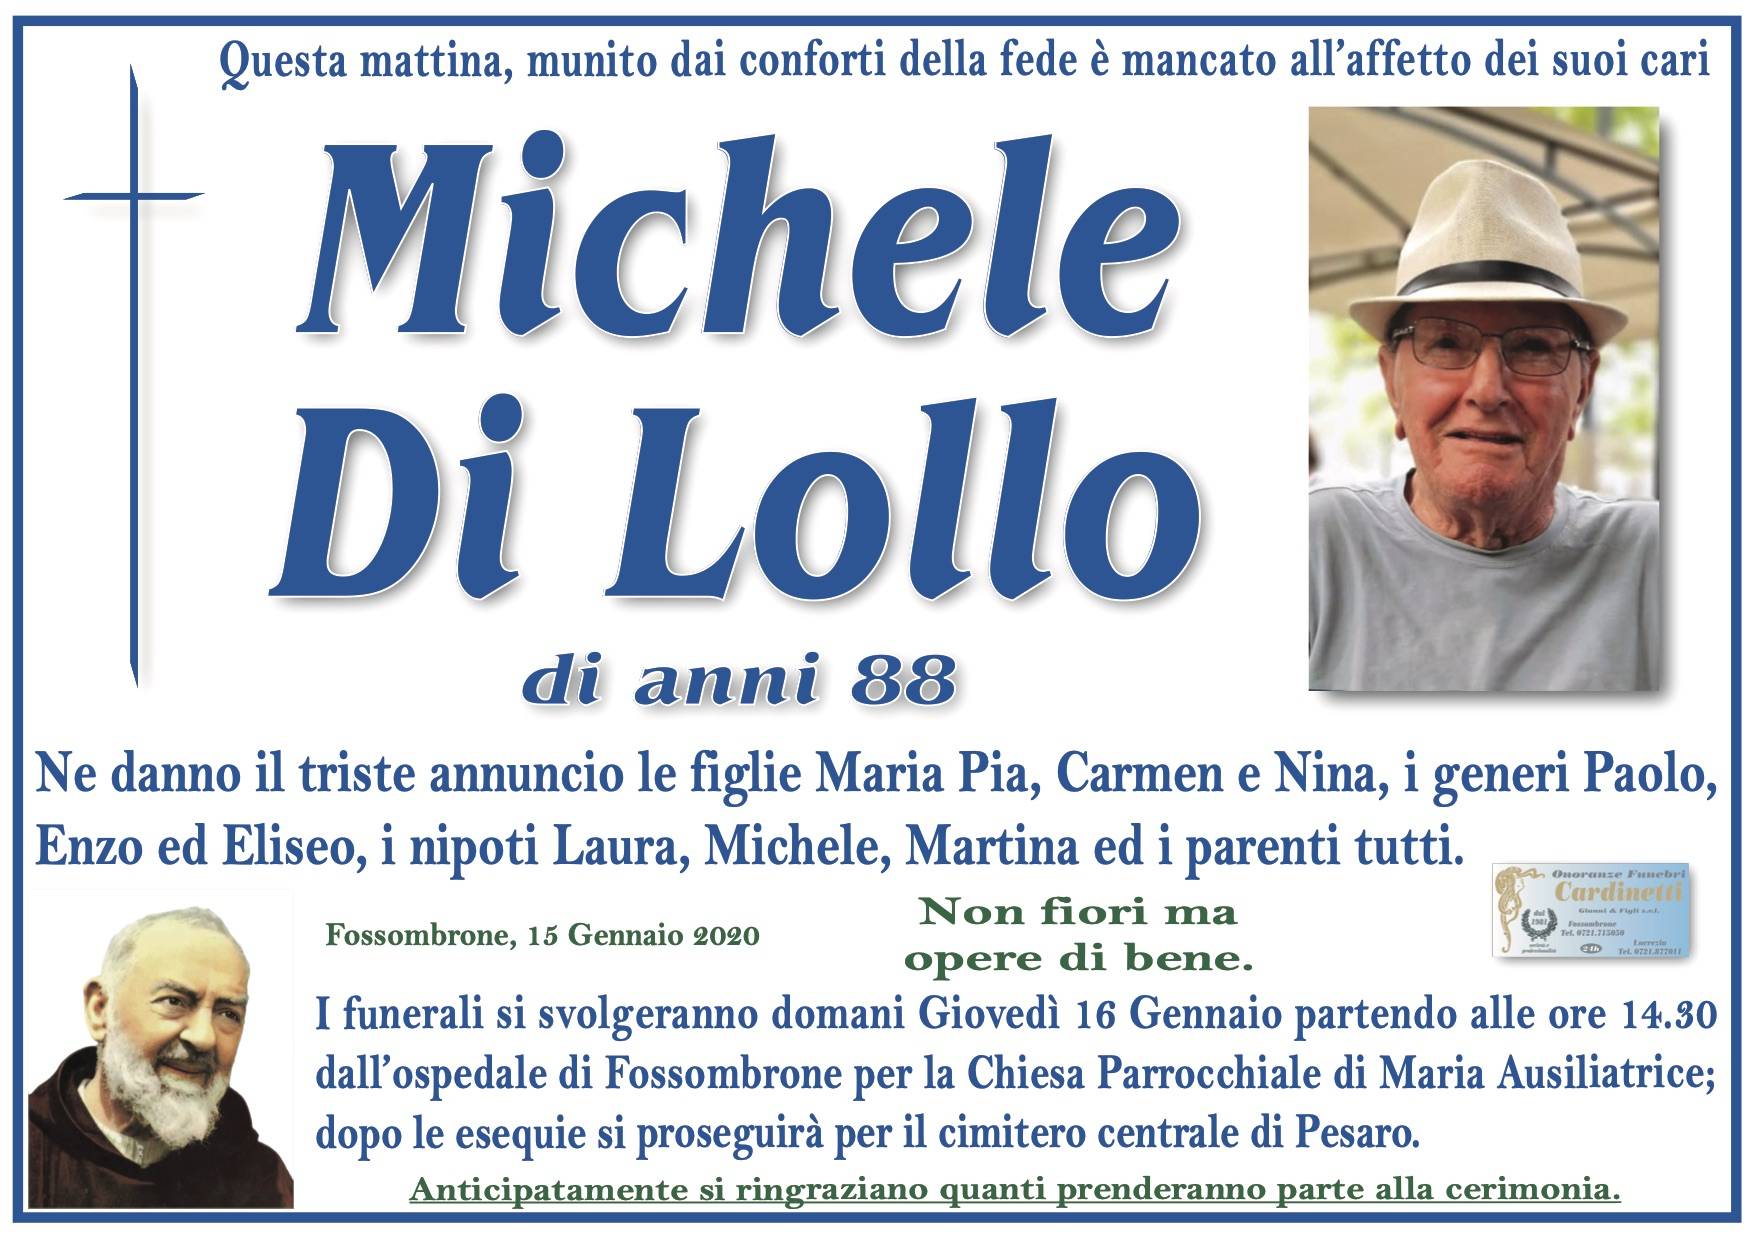 Michele Di Lollo